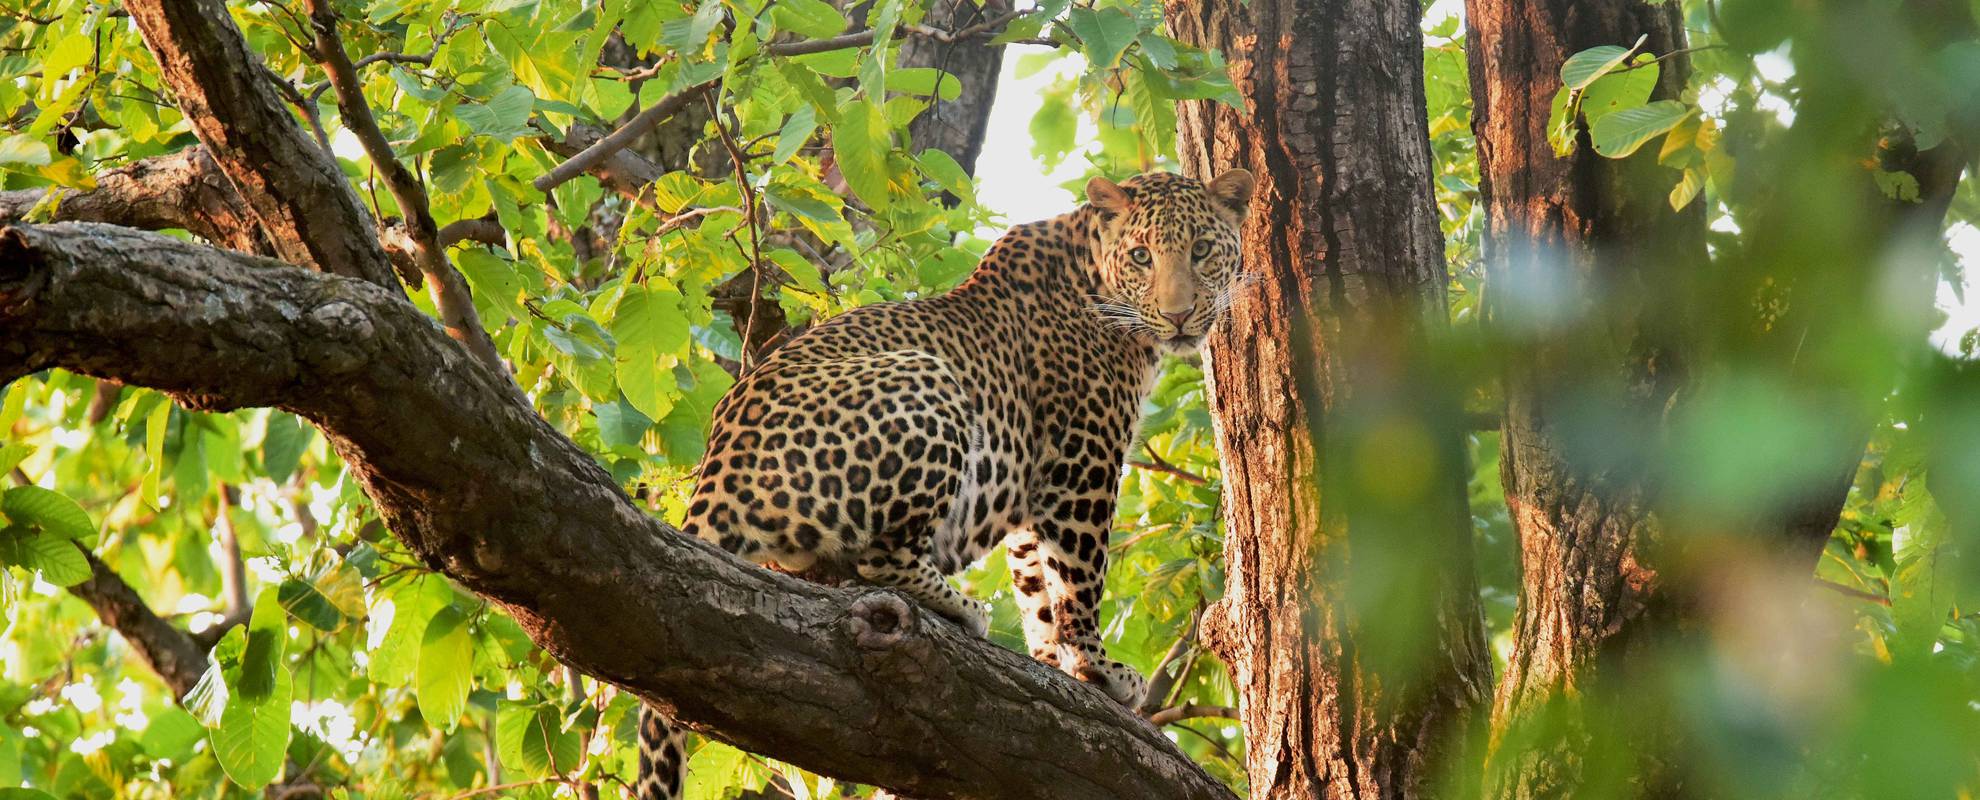 I nationalparken Bhandavgarh har du stor chans att se tiger och leopard